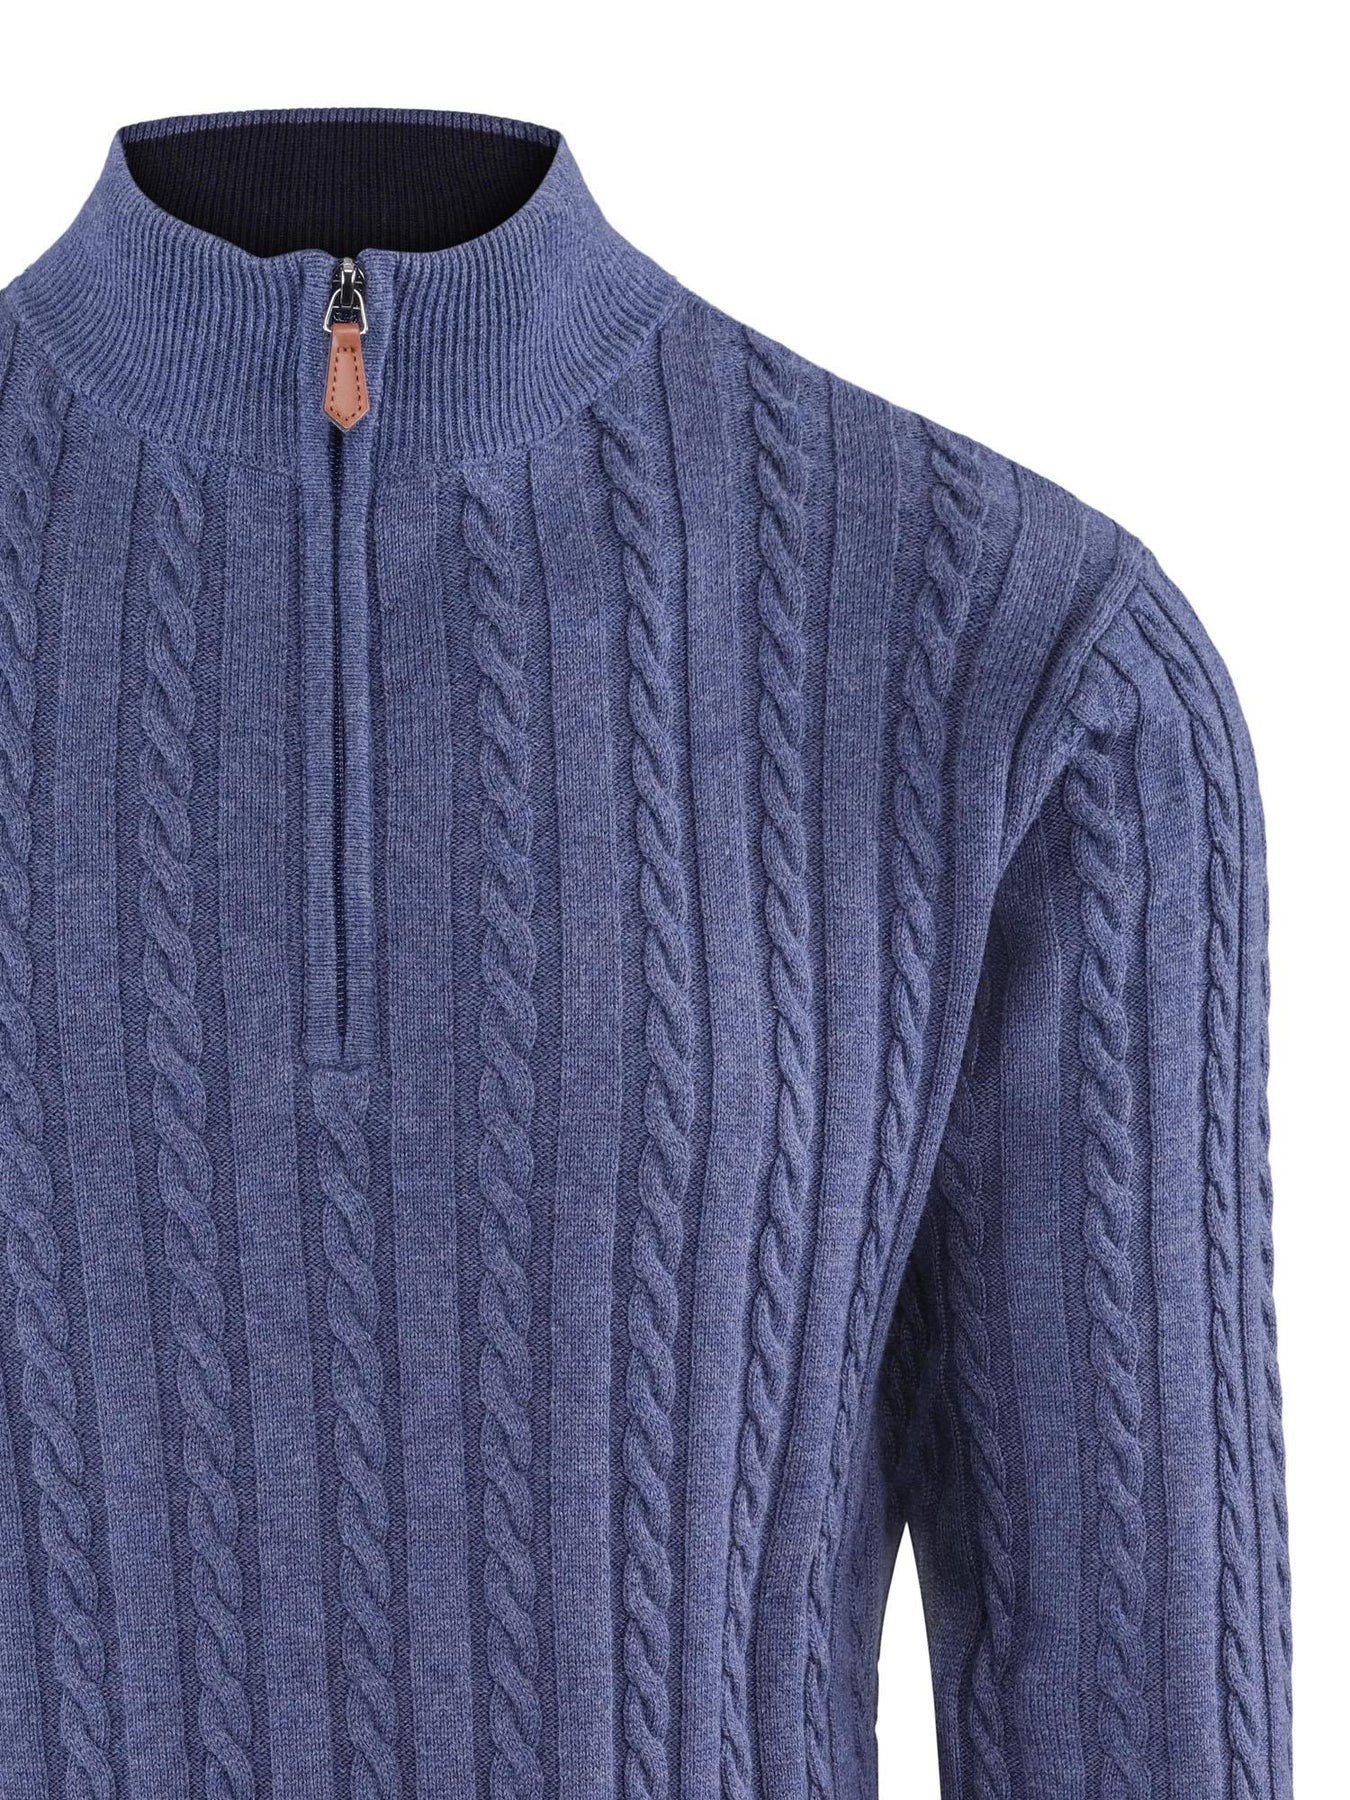 Arthur pullover zip blue